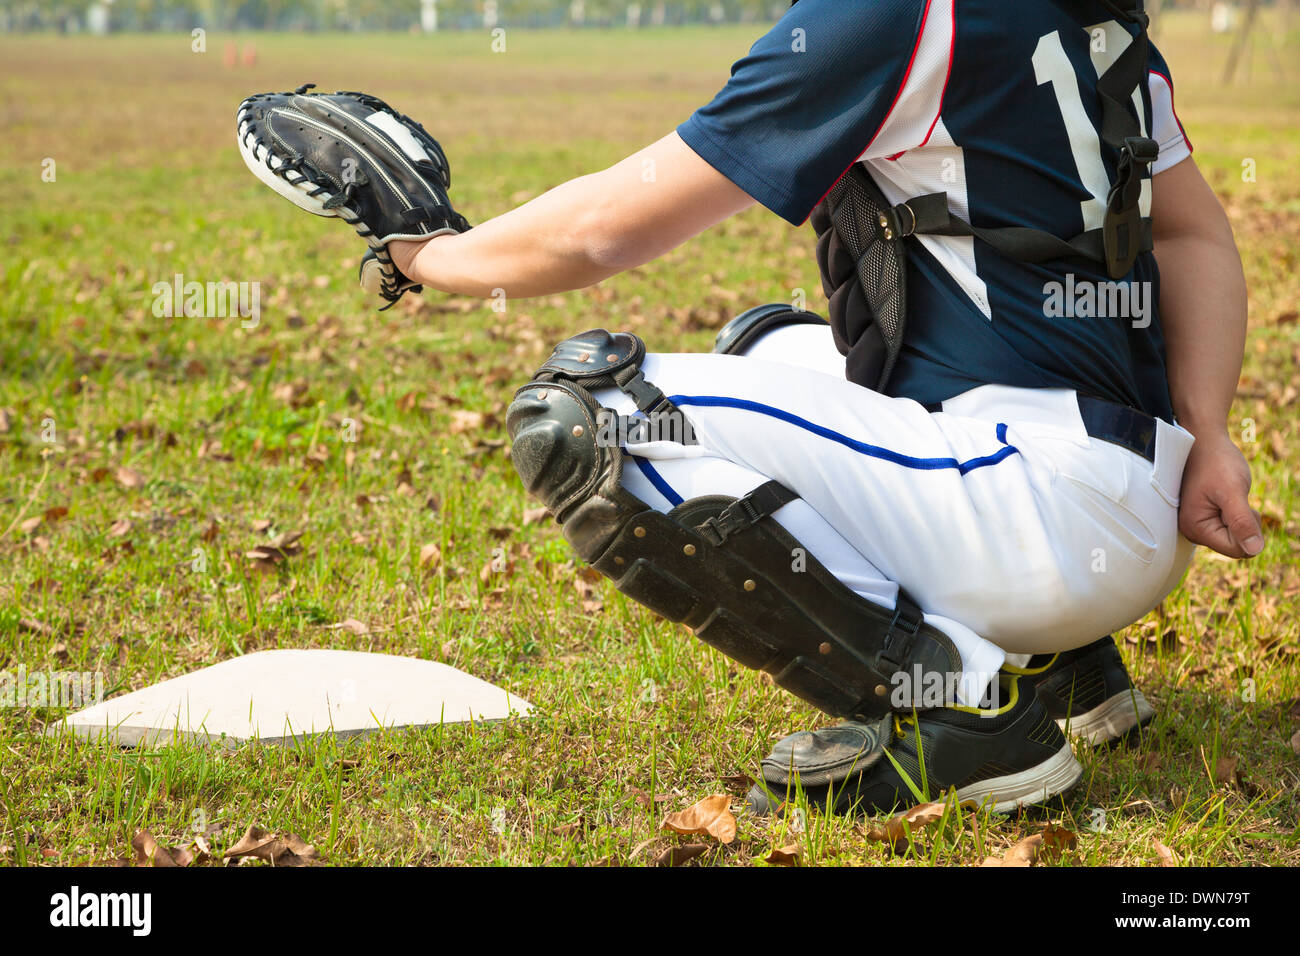 Baseball-Catcher bereit, Ball am Home-Plate in Baseball-Feld zu fangen Stockfoto